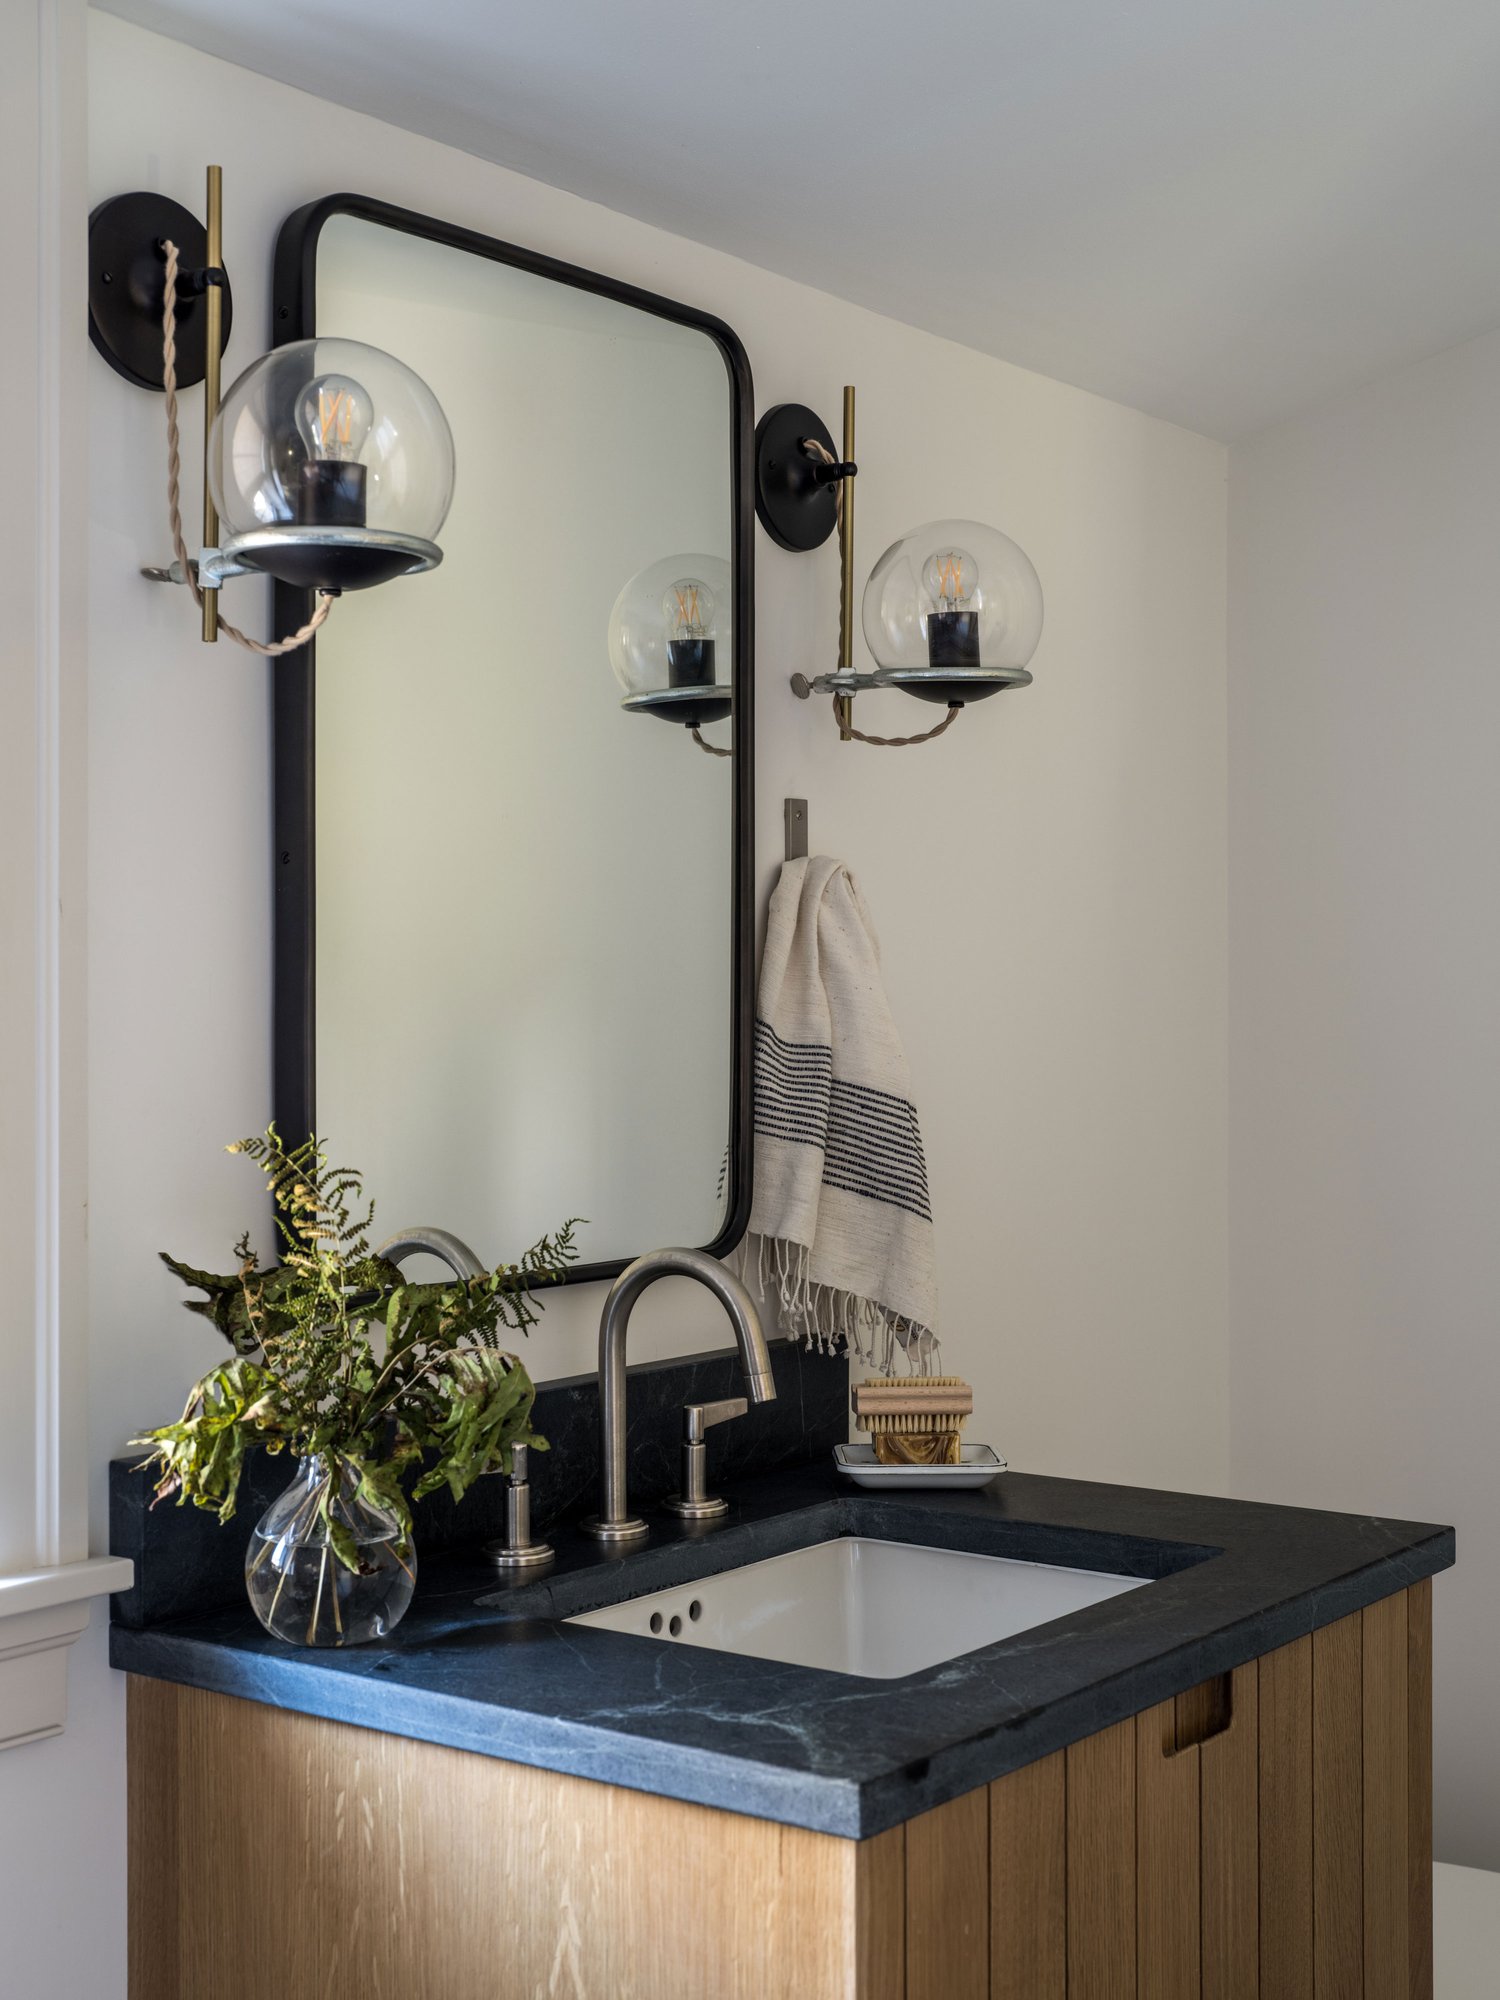 Зеркало и светильники над умывальником в ванной